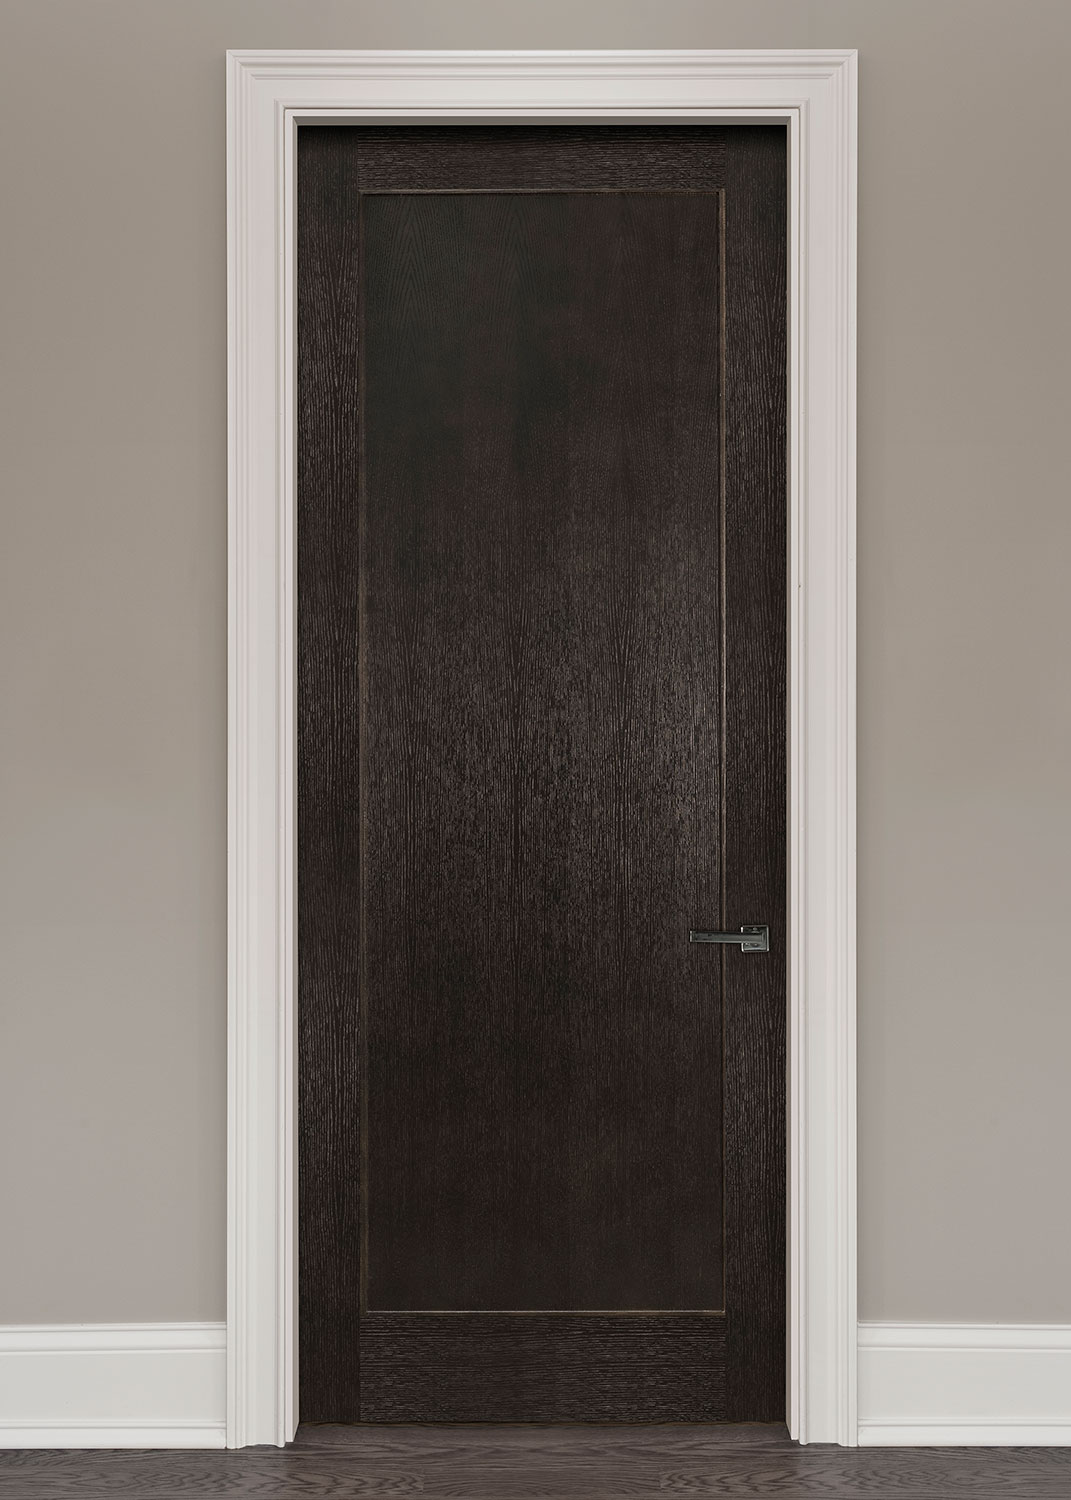 Wood Interior Door - Single